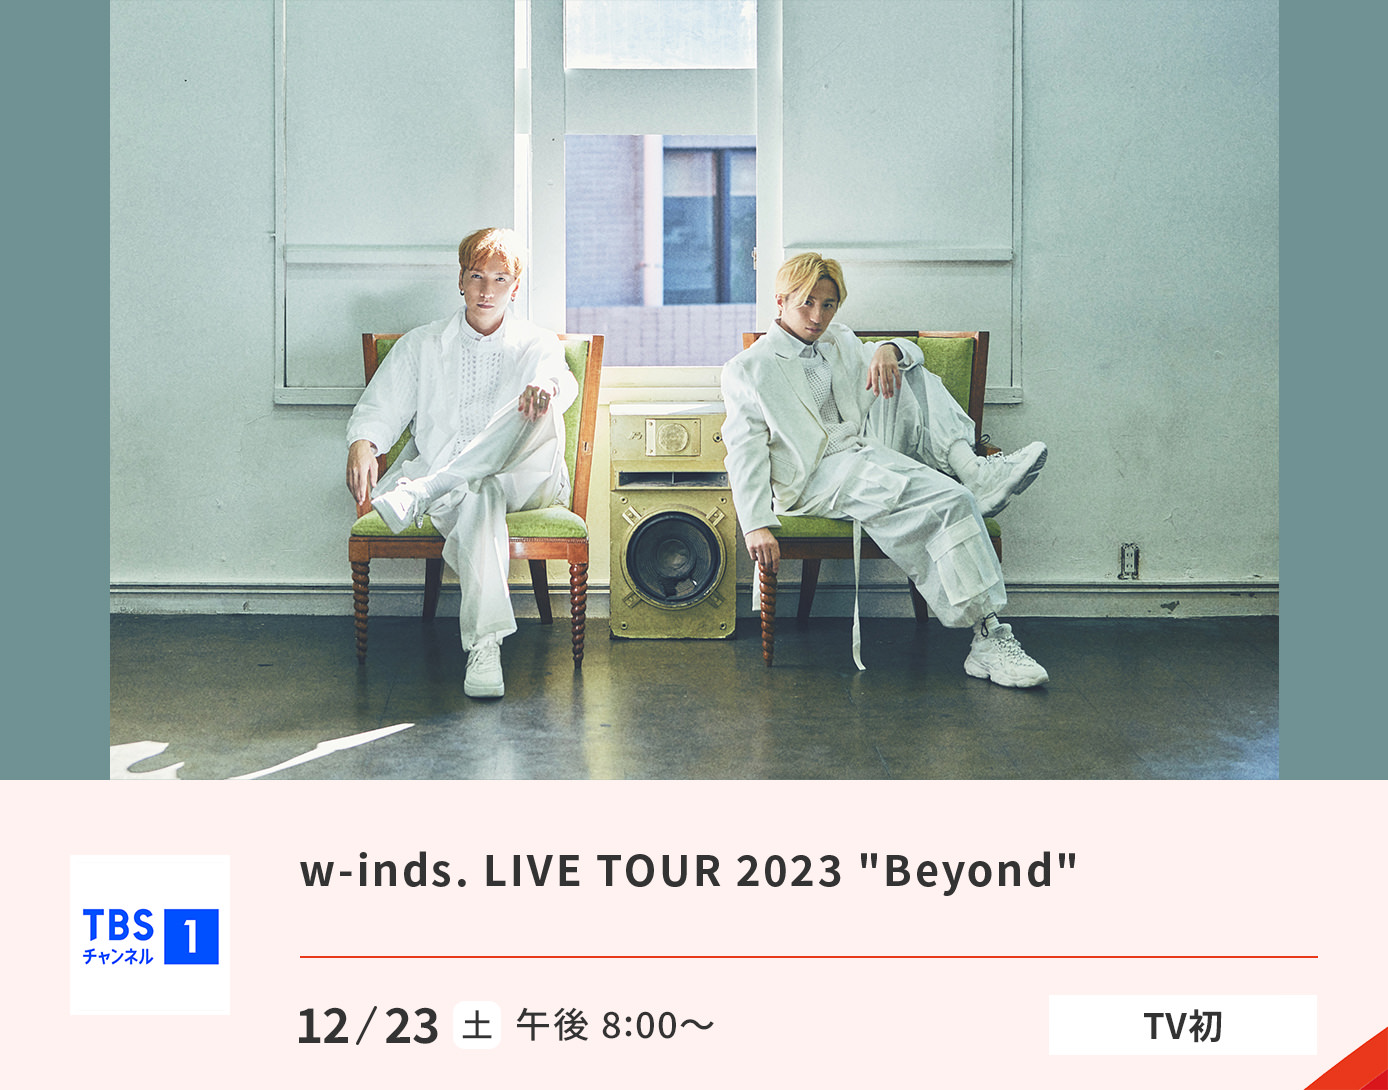 w-inds. LIVE TOUR 2023 